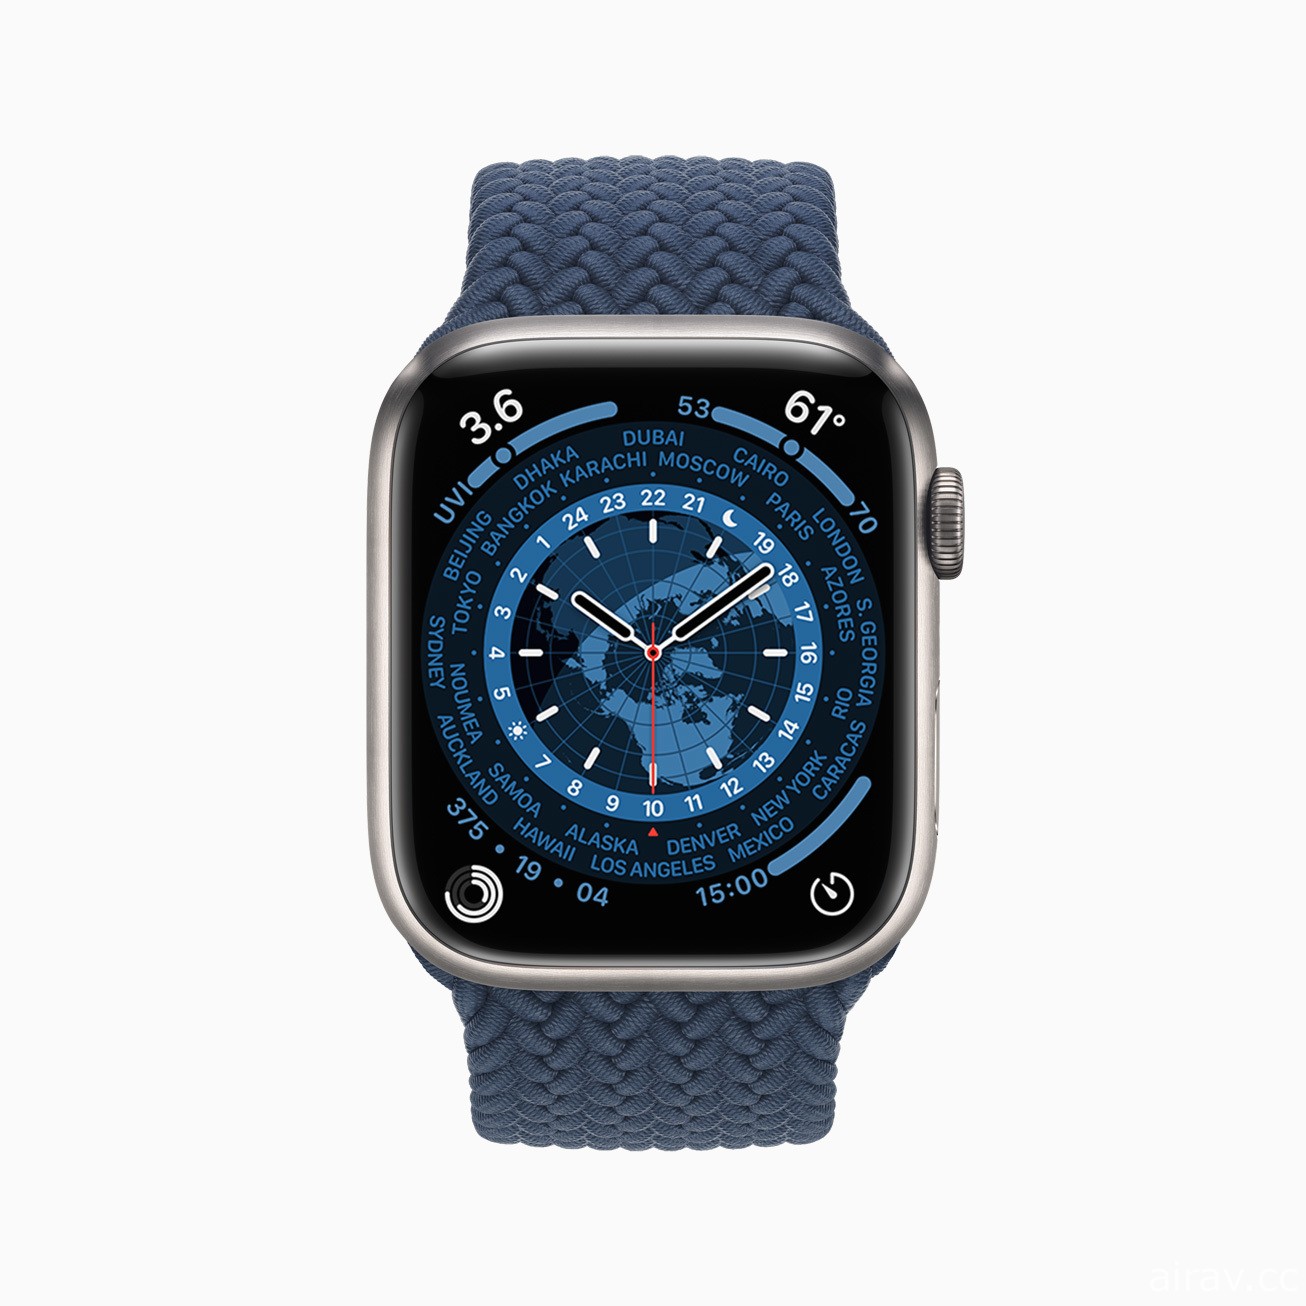 Apple 公布 Apple Watch Series 7 配备最大、最先进的显示器及 watchOS 8